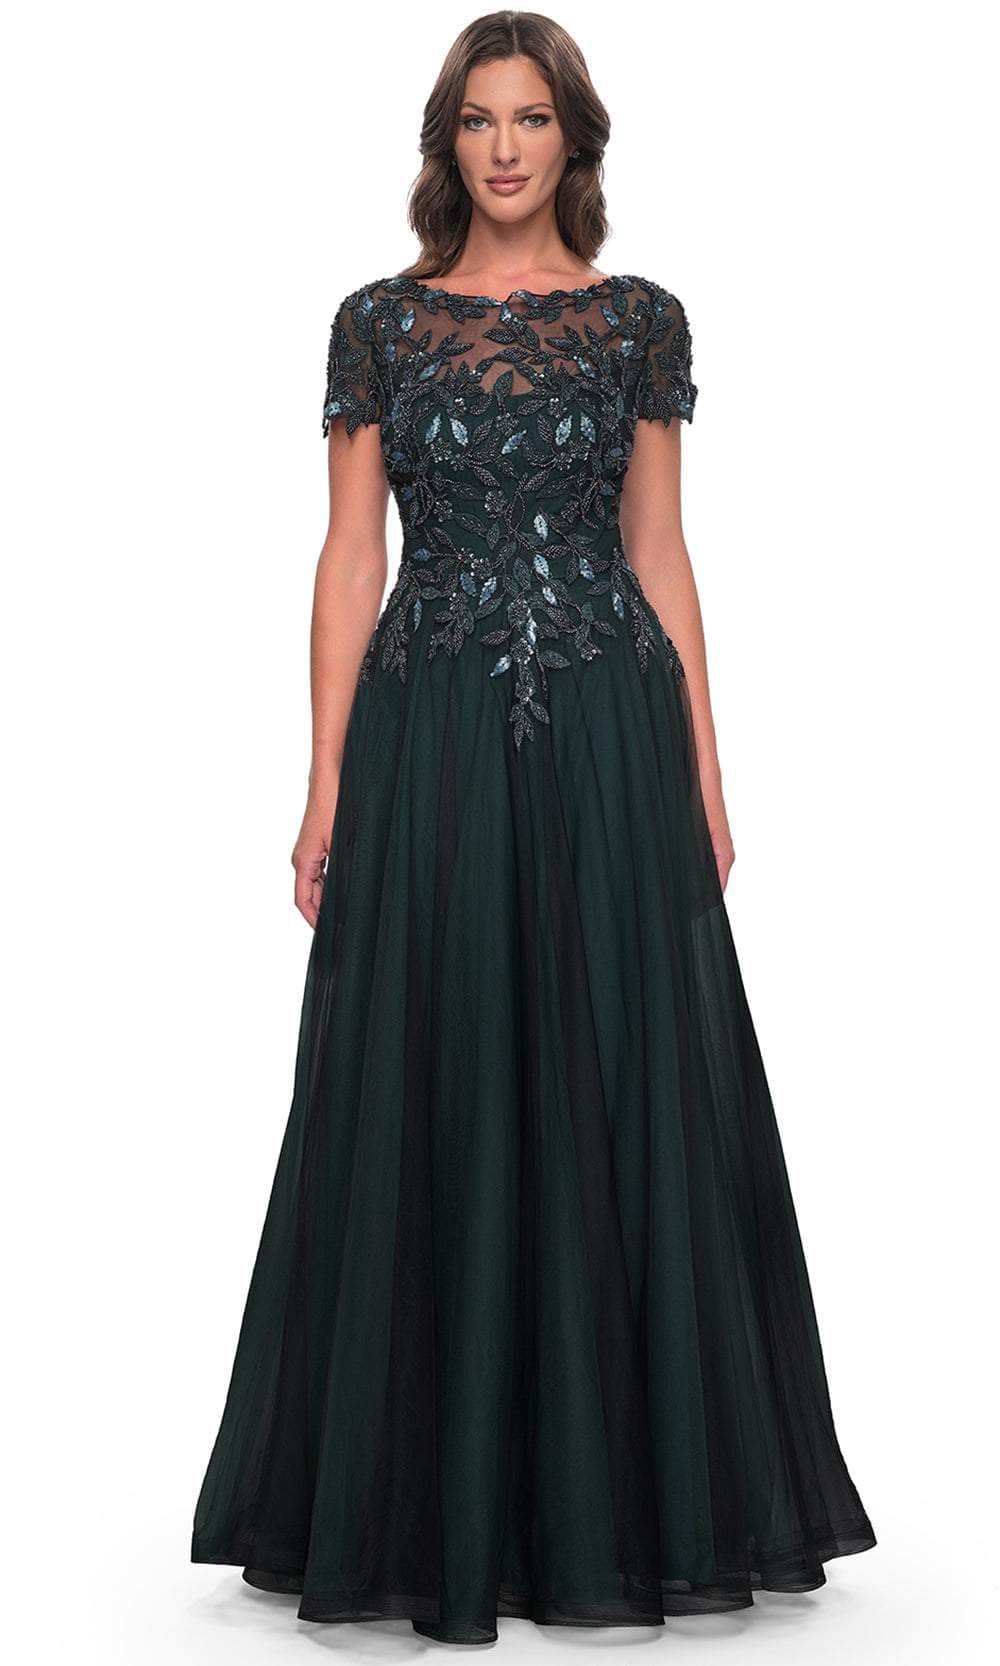 Image of La Femme 31267 - Floral Sequin Formal Dress